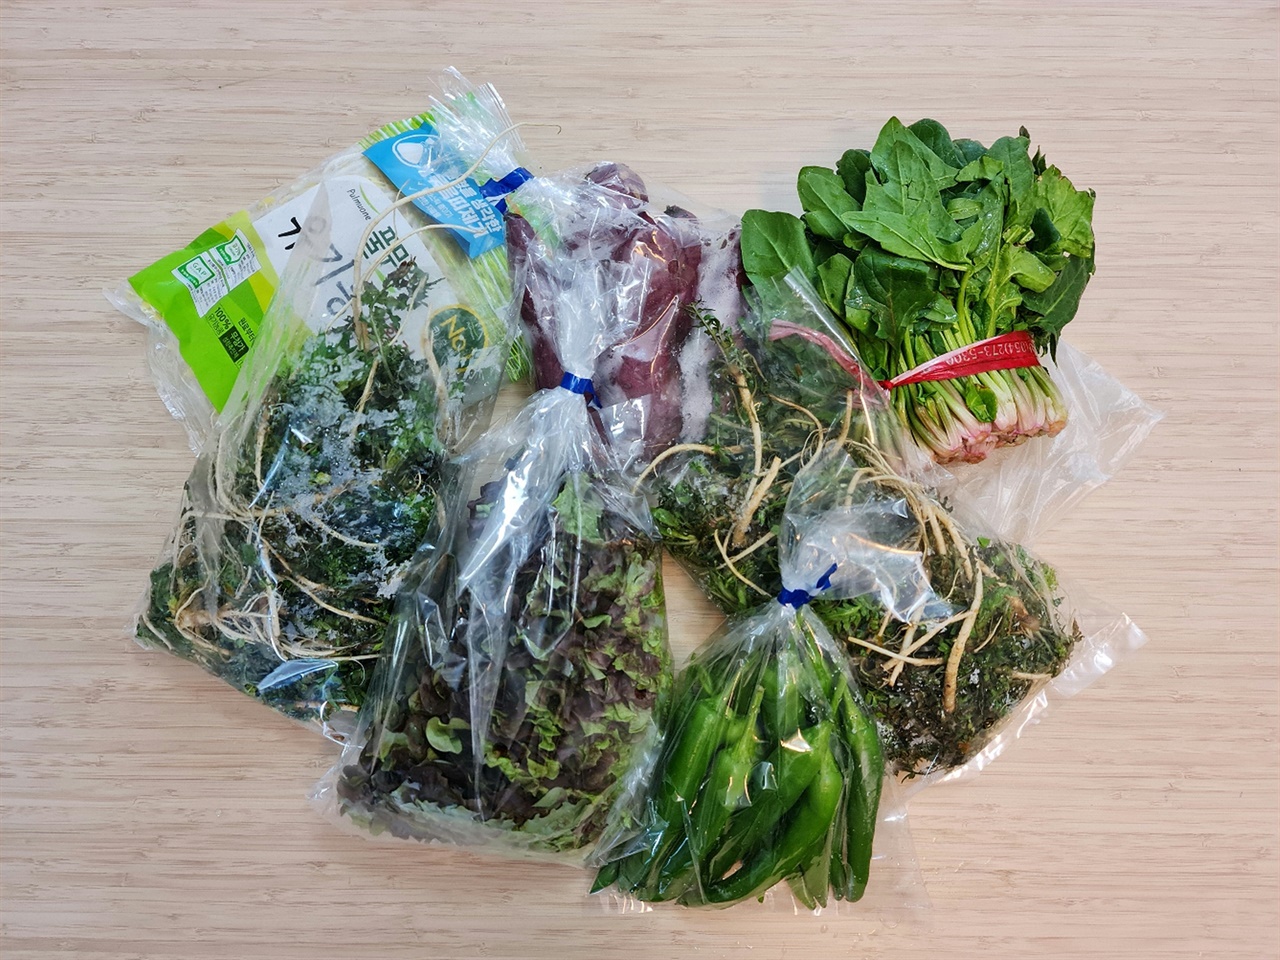 인터넷 한국슈퍼마켓에서 구매한 한국 봄 제철 채소